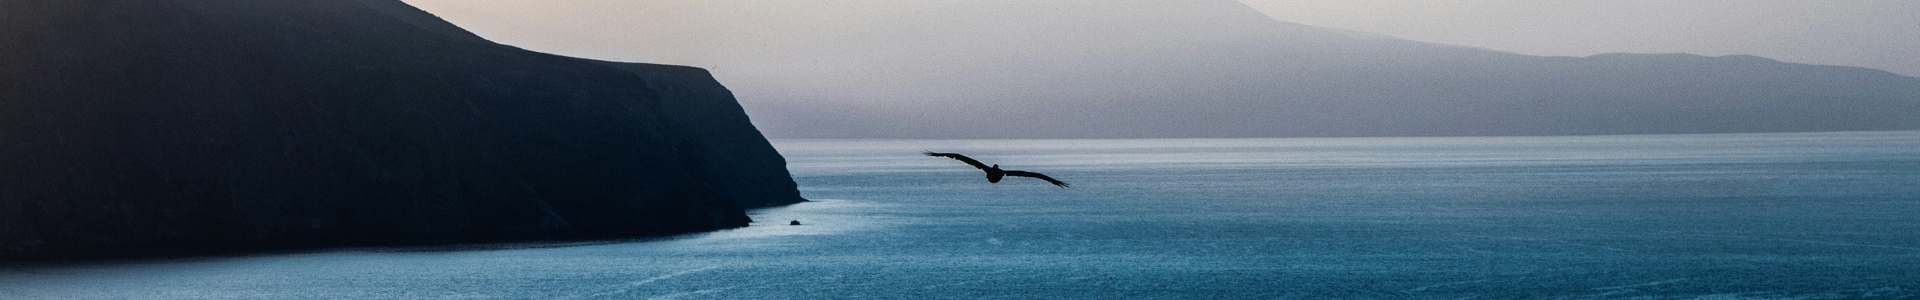 Weitblick über eine steile Küste übers Meer mit einer fliegenden Möwe